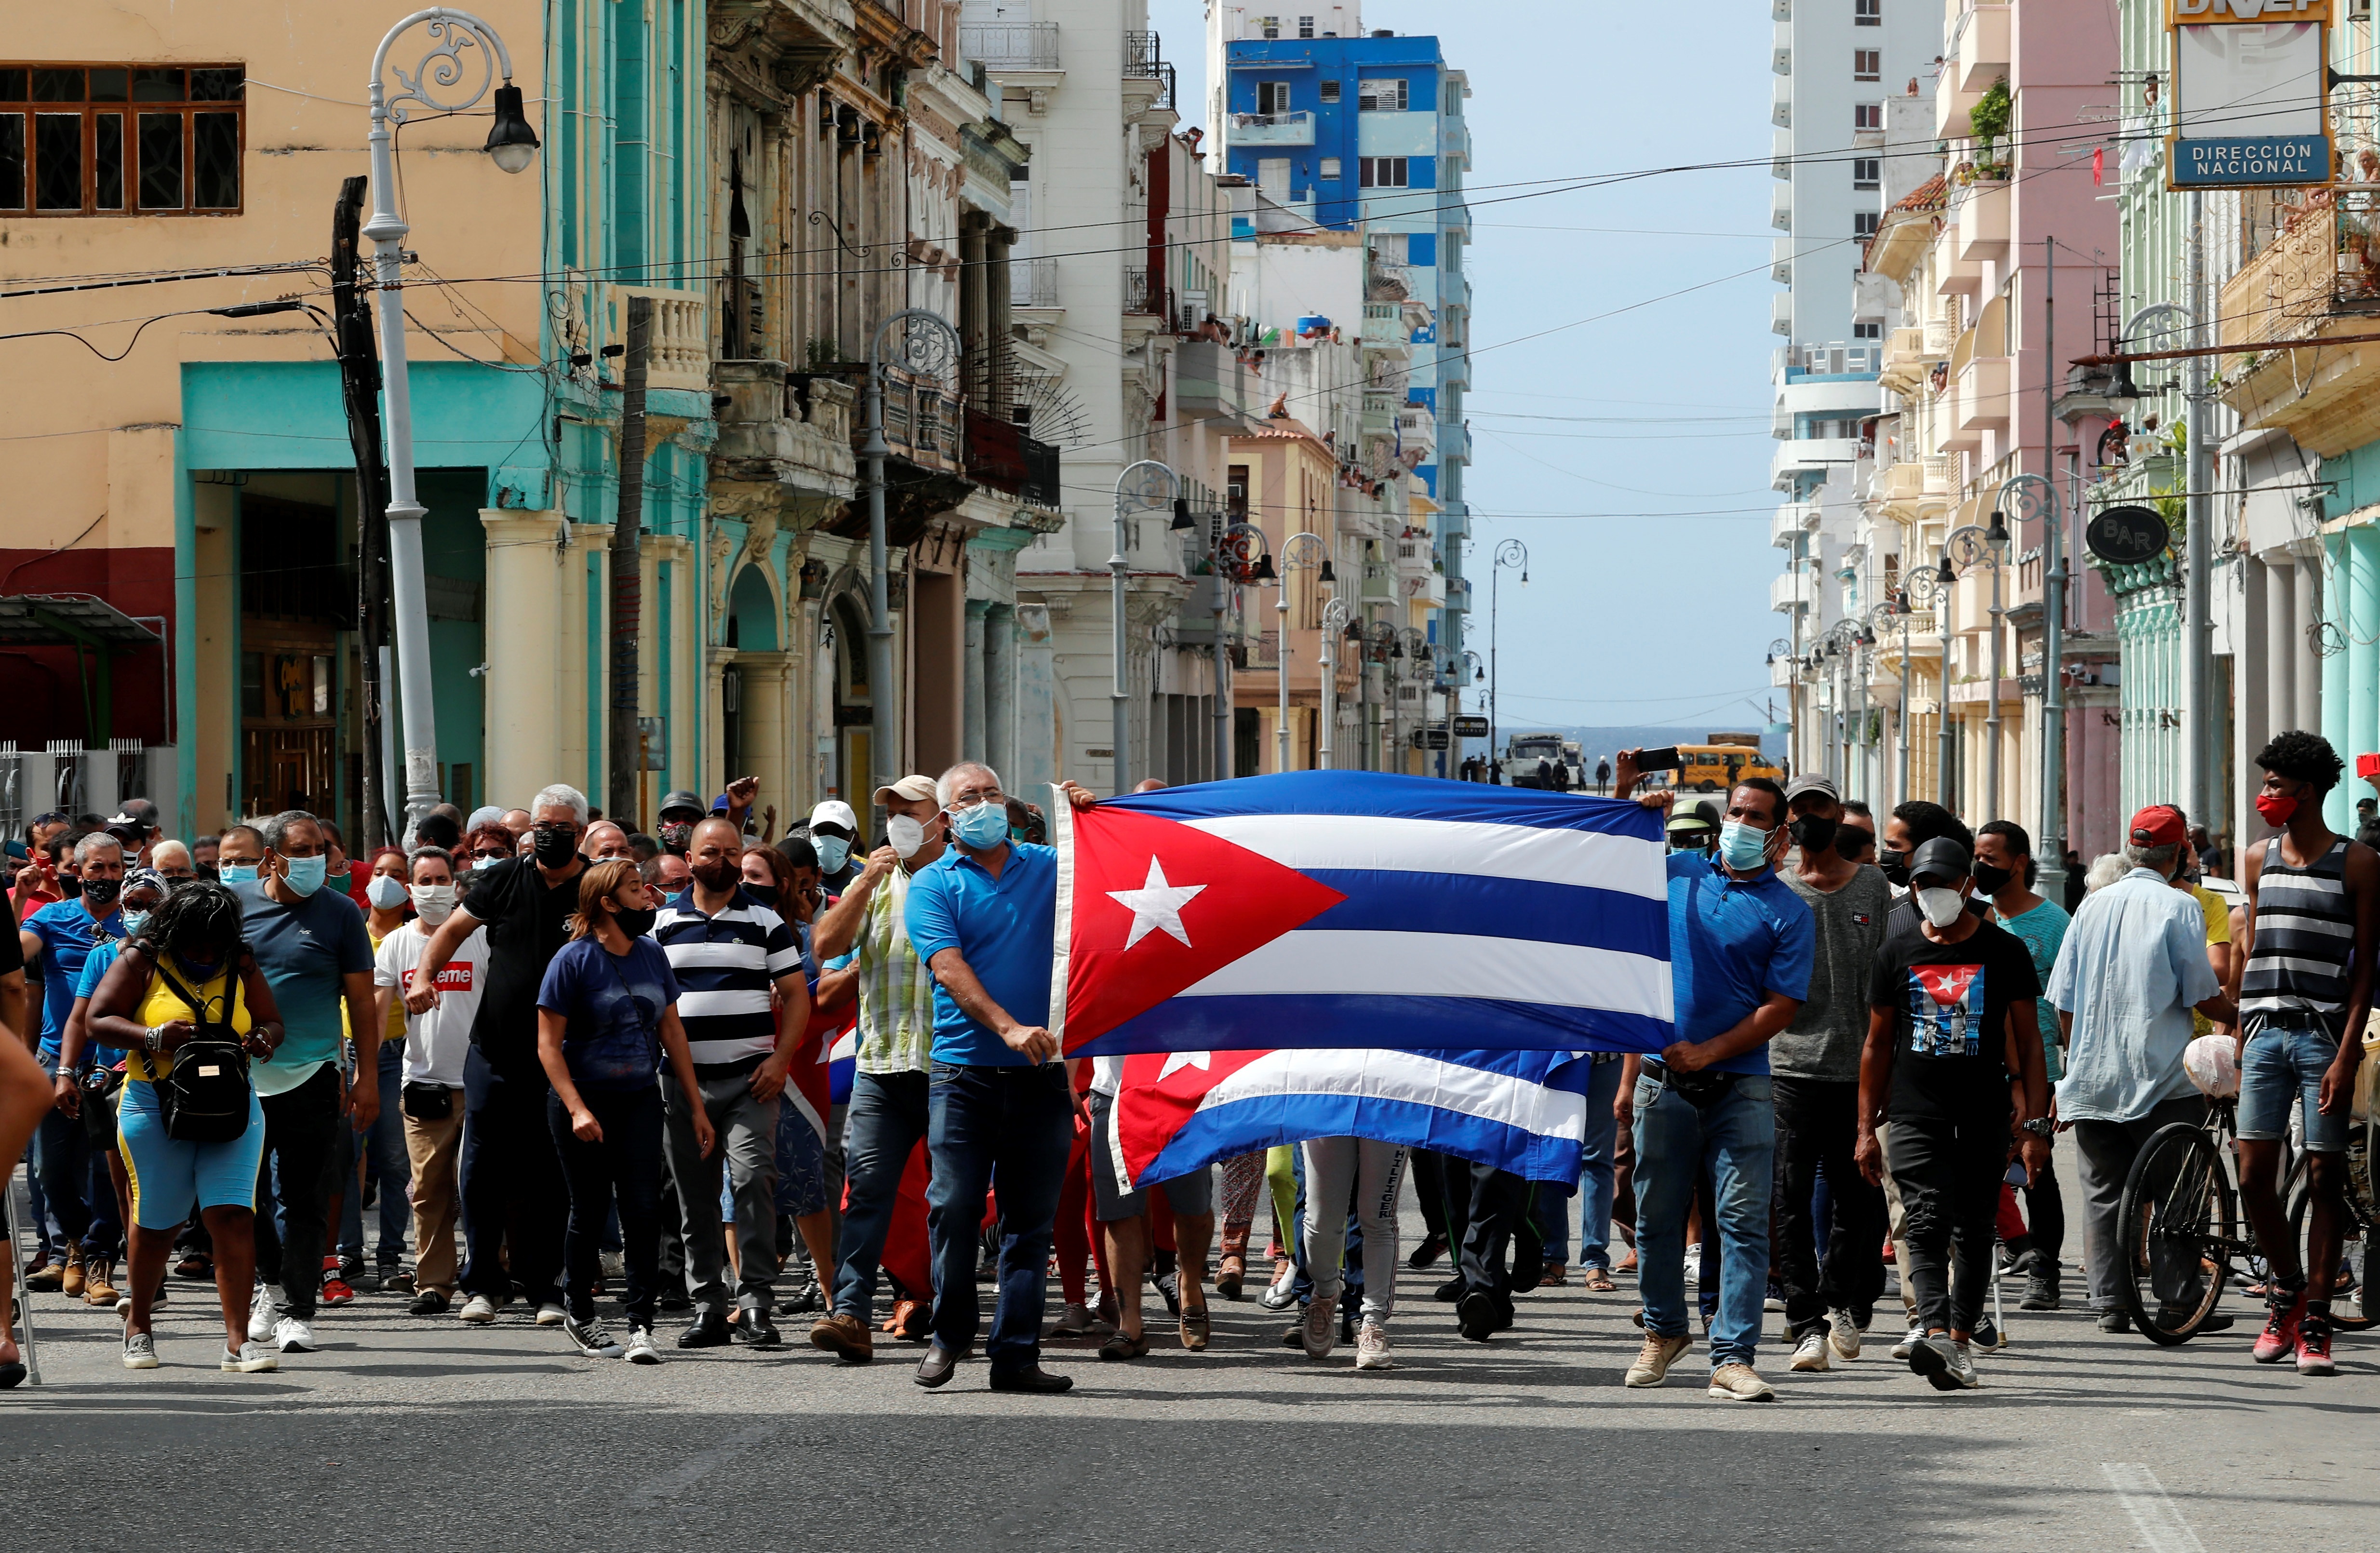 Fotografía de archivo fechada el 11 de julio de 2021. Un grupo de personas responden a manifestantes frente al capitolio de Cuba en La Habana, en una fotografía de archivo. EFE/Ernesto Mastrascusa
